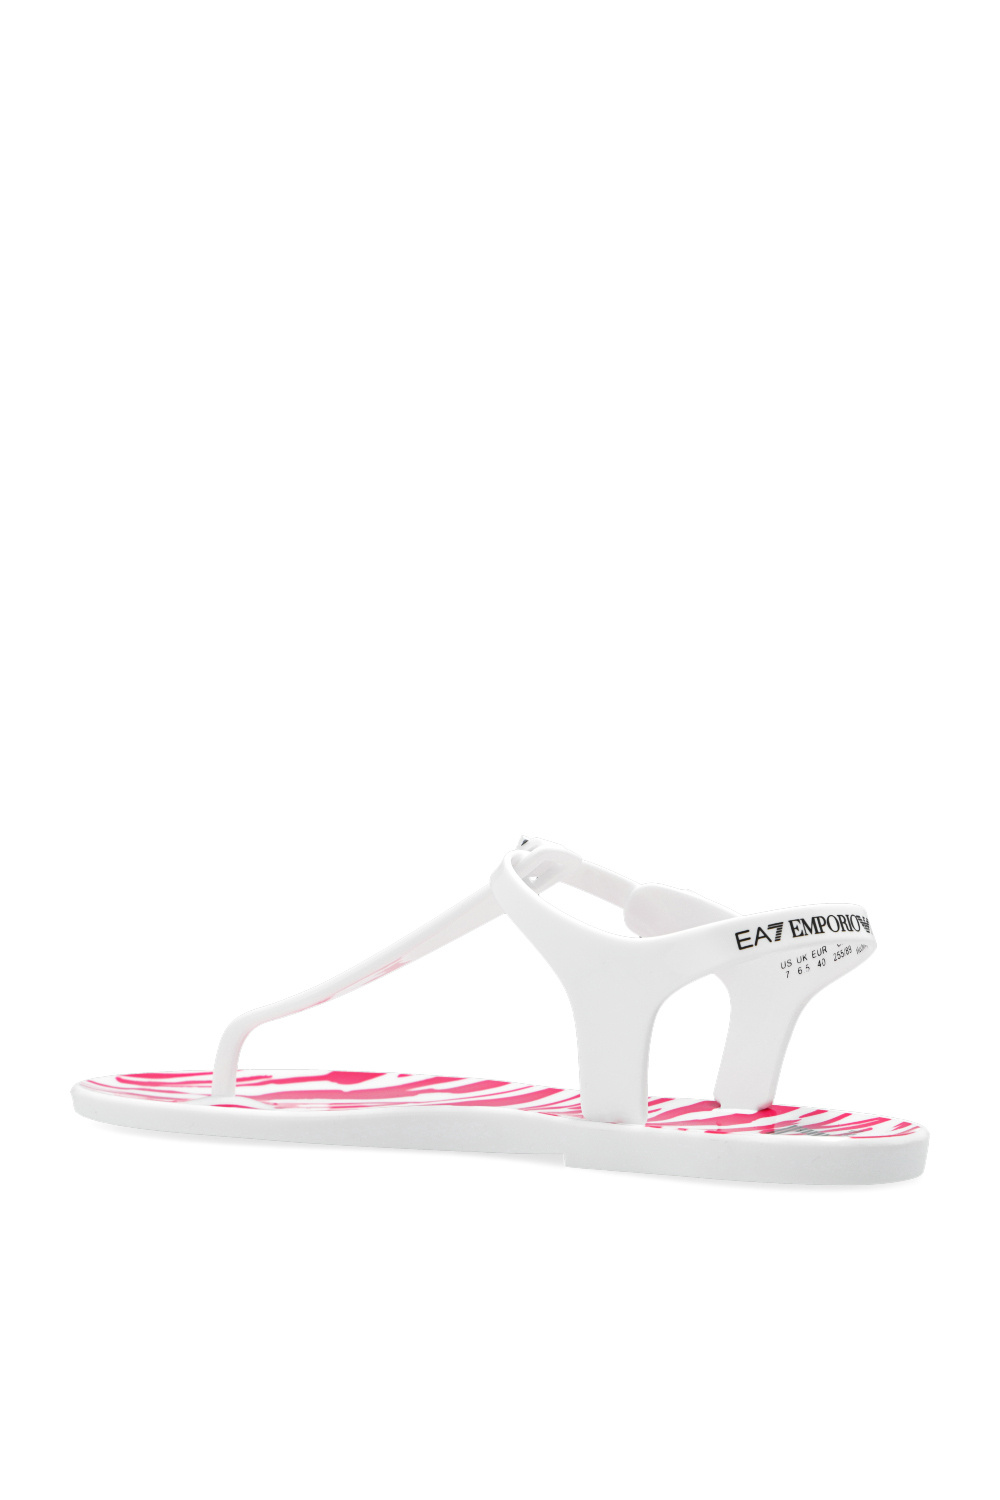 EMPORIO ARMANI EA7 Unisex Street Style Logo Sandals | lupon.gov.ph